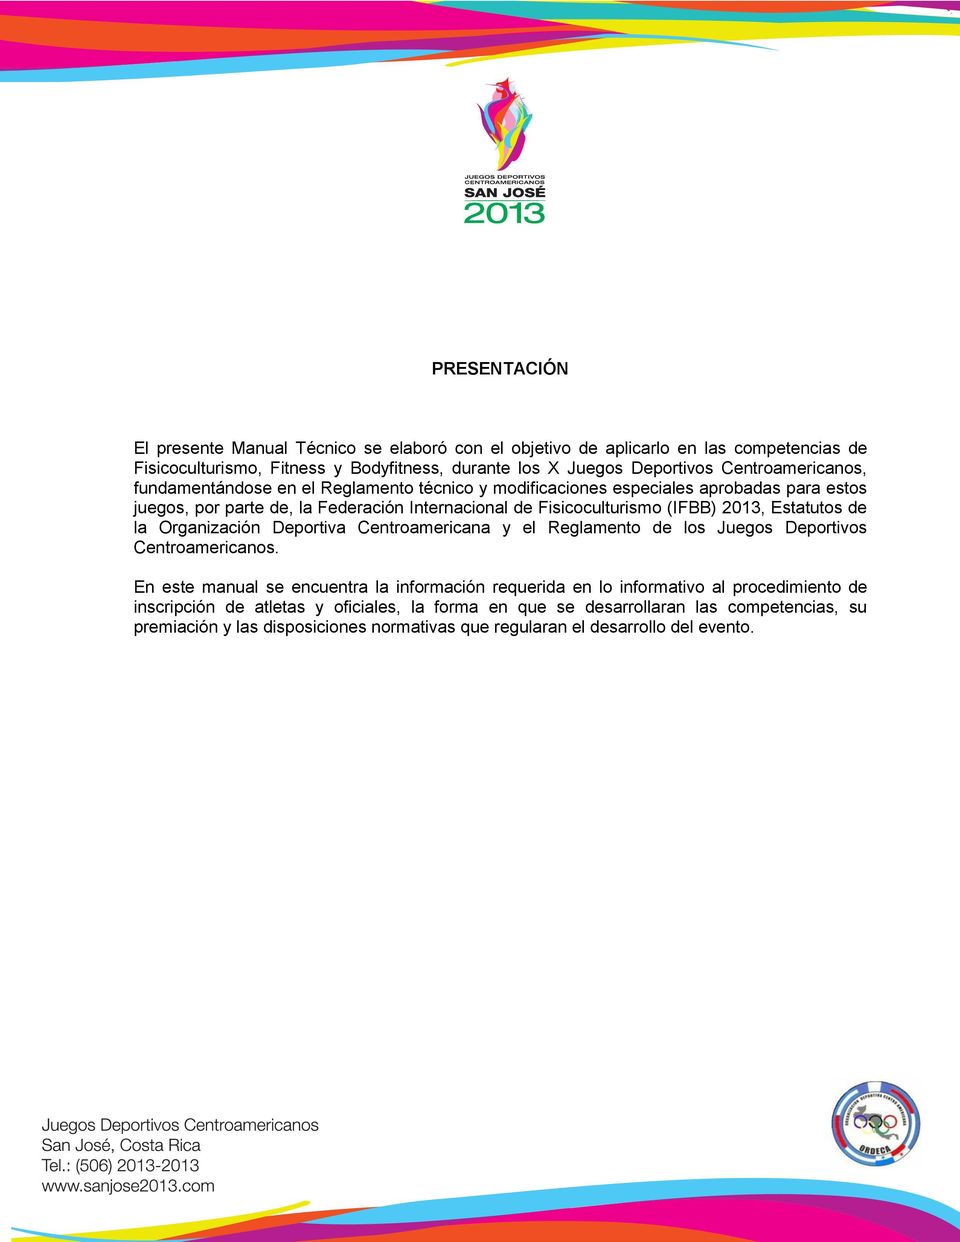 2013, Estatutos de la Organización Deportiva Centroamericana y el Reglamento de los Juegos Deportivos Centroamericanos.